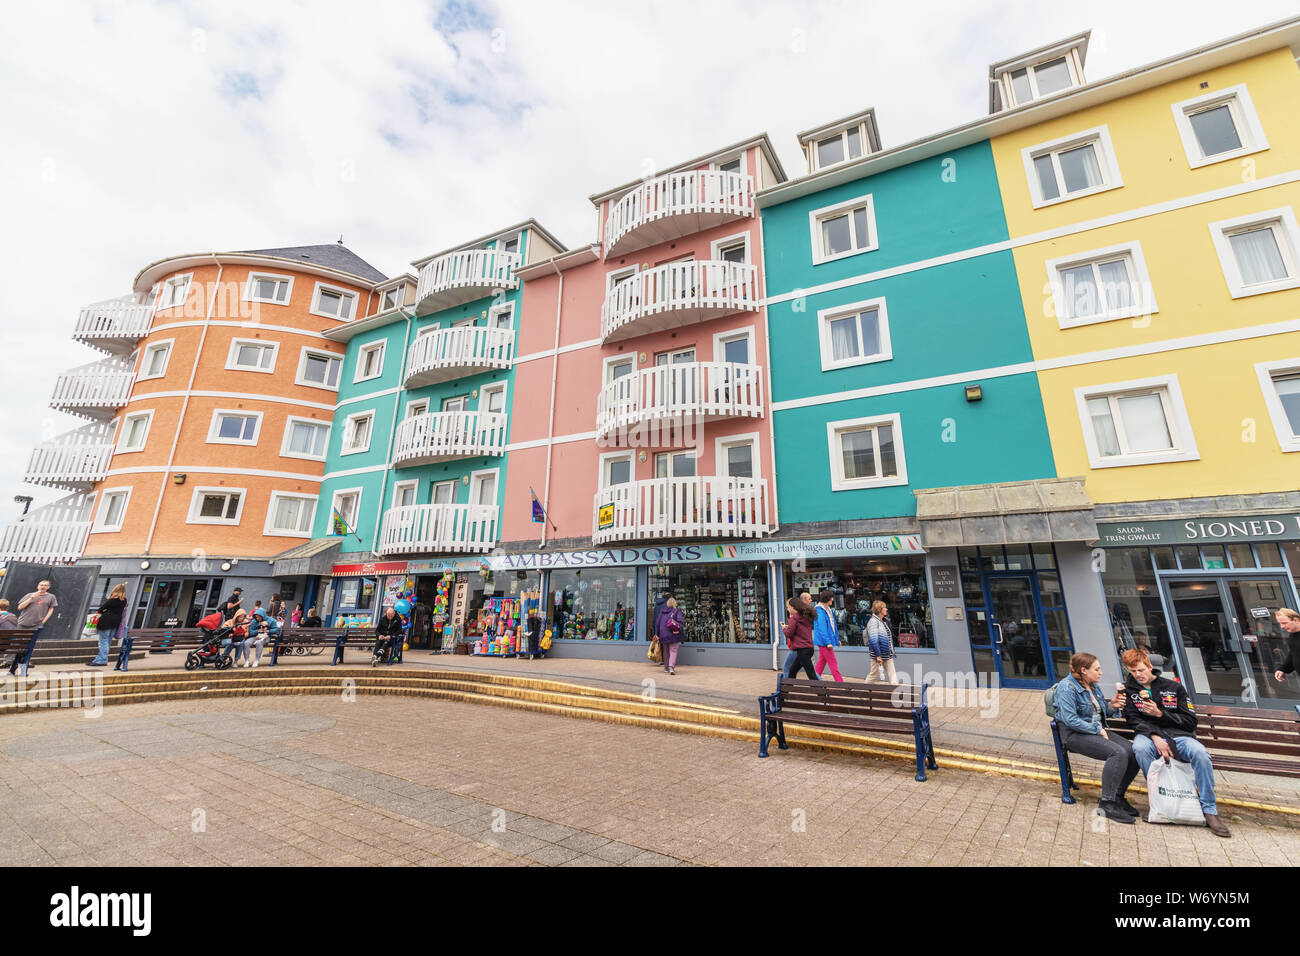 Aberystwyth, Pays de Galles / UK - 20 juillet 2019 - maisons colorées et des boutiques par le front de mer dans la station balnéaire d'Aberystwyth Banque D'Images